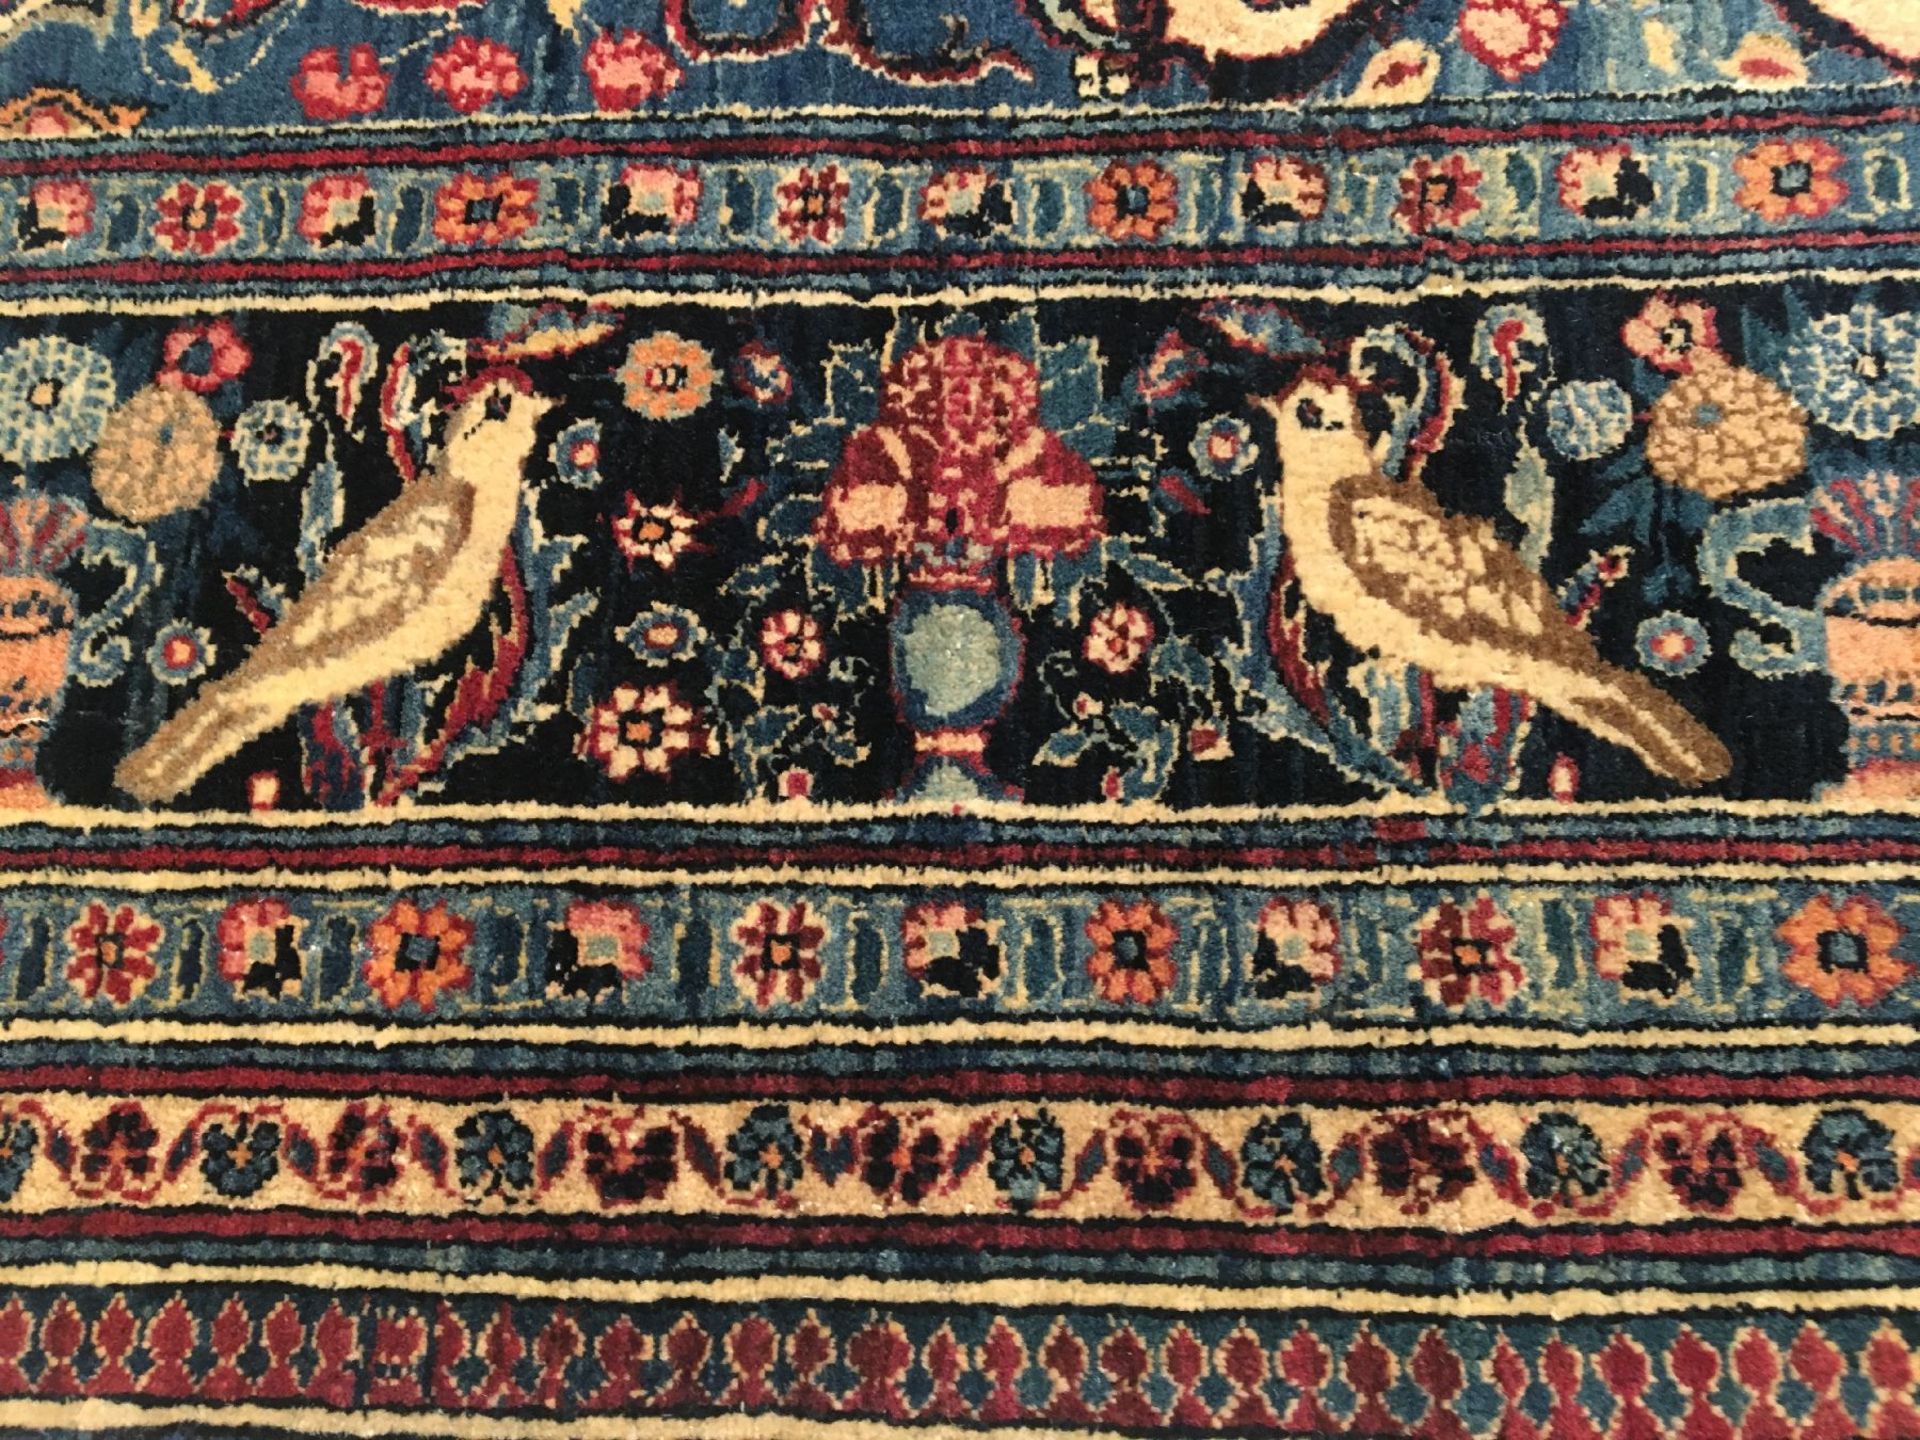 Feiner Teheran antik, Zentralpersien, Ende 19.Jhd., Korkwolle geknüpft auf Baumwolle. Seltener - Bild 8 aus 10